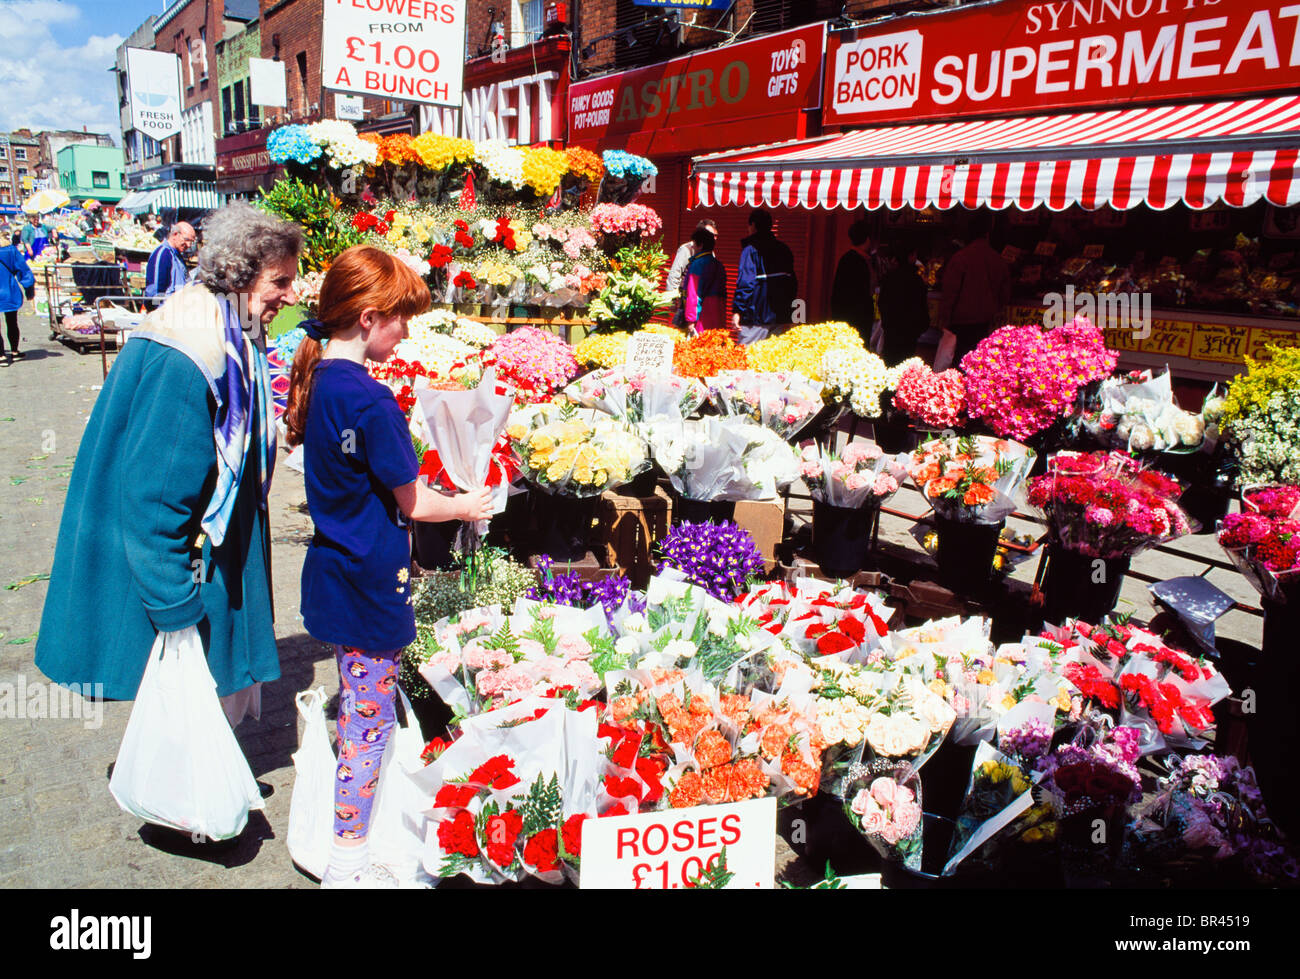 Dublin, Co Dublin, Ireland, Moore Street Markets Stock Photo